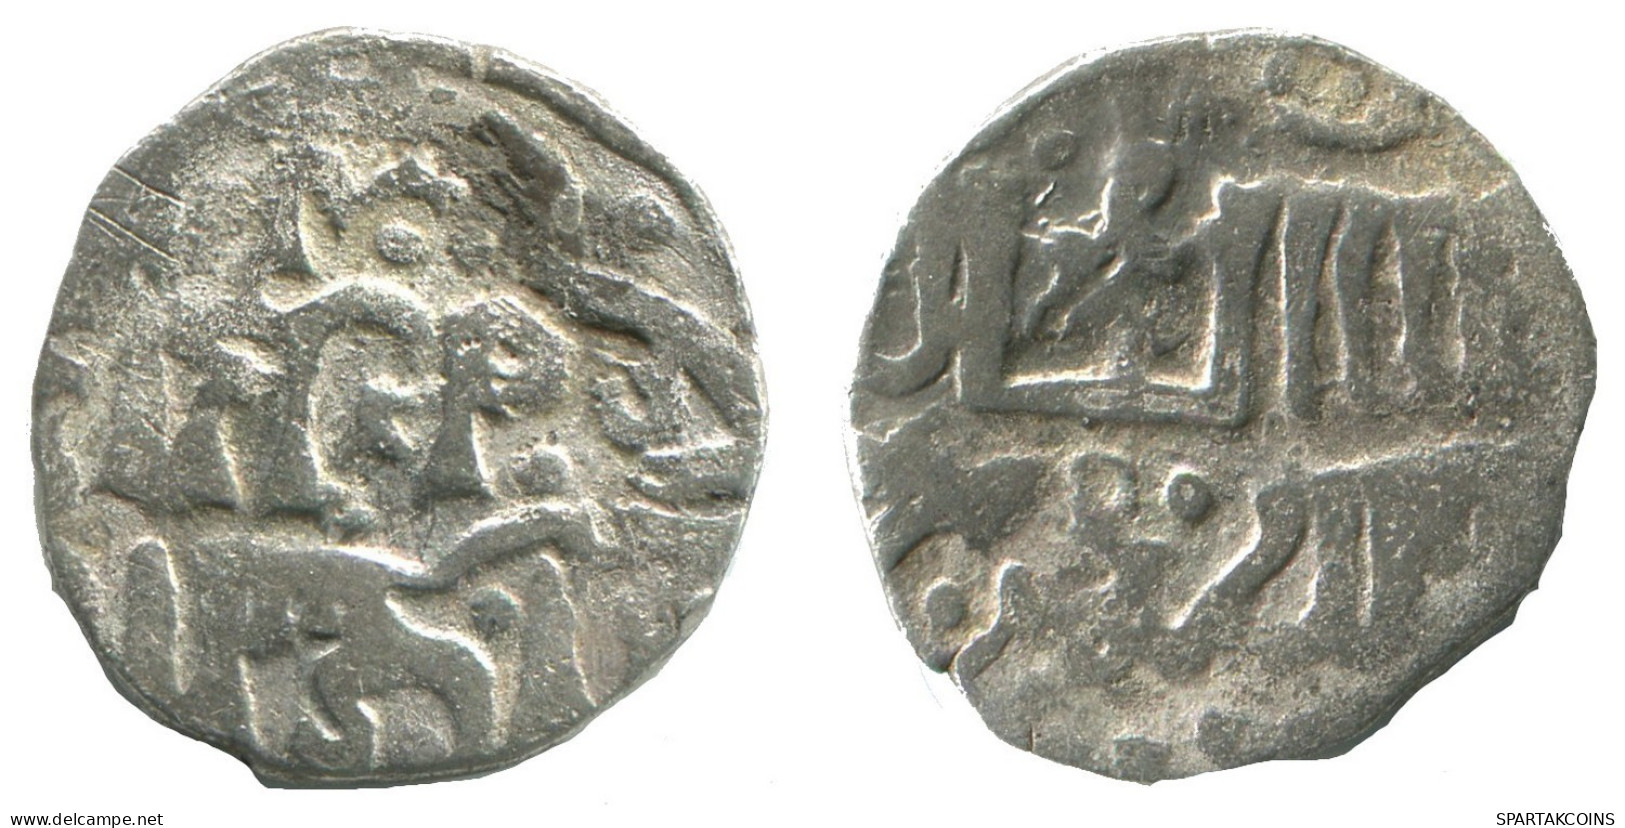 GOLDEN HORDE Silver Dirham Medieval Islamic Coin 1.5g/16mm #NNN2019.8.E.A - Islamische Münzen